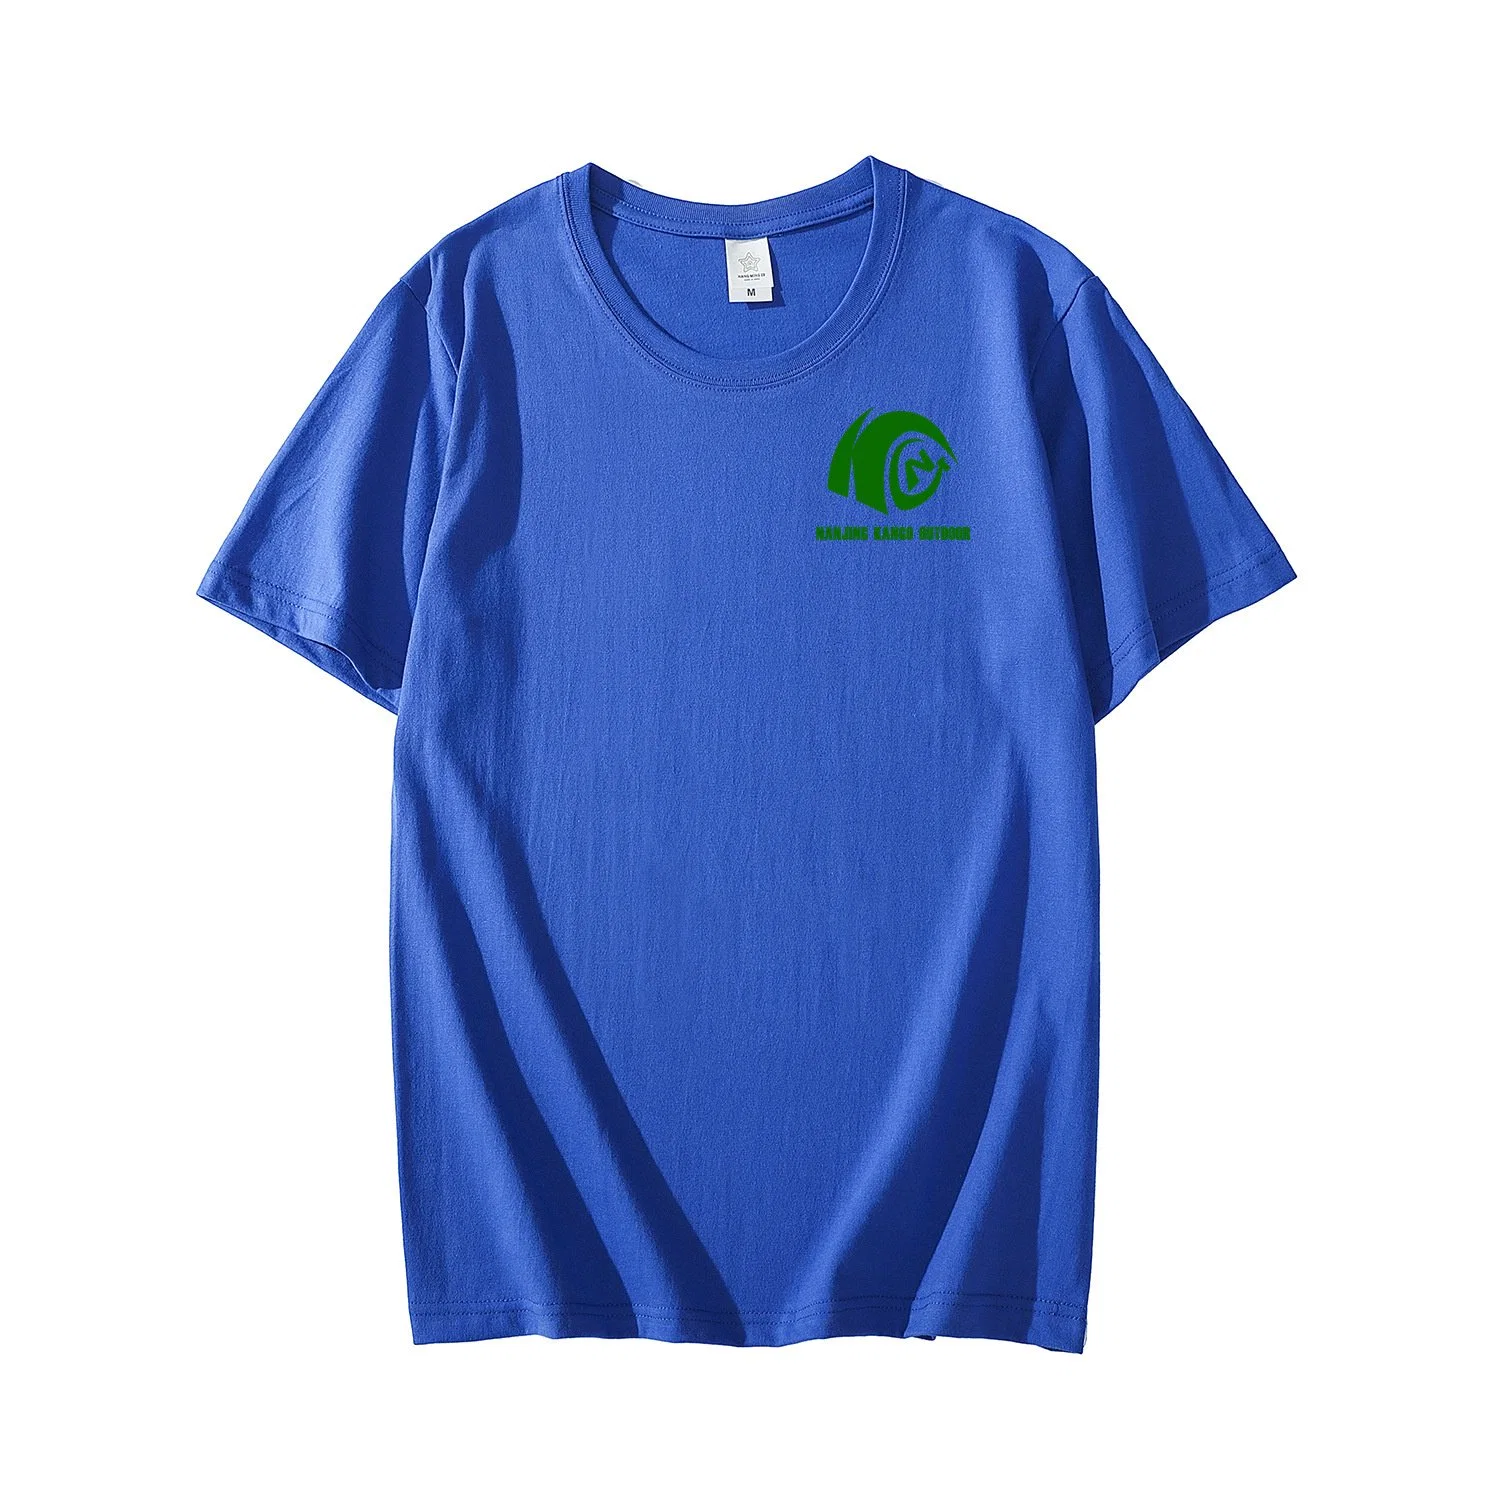 Kango Men Plain Blank 100% Cotton T Shirts High quality/High cost performance T-Shirts Custom Logo Printing T Shirts